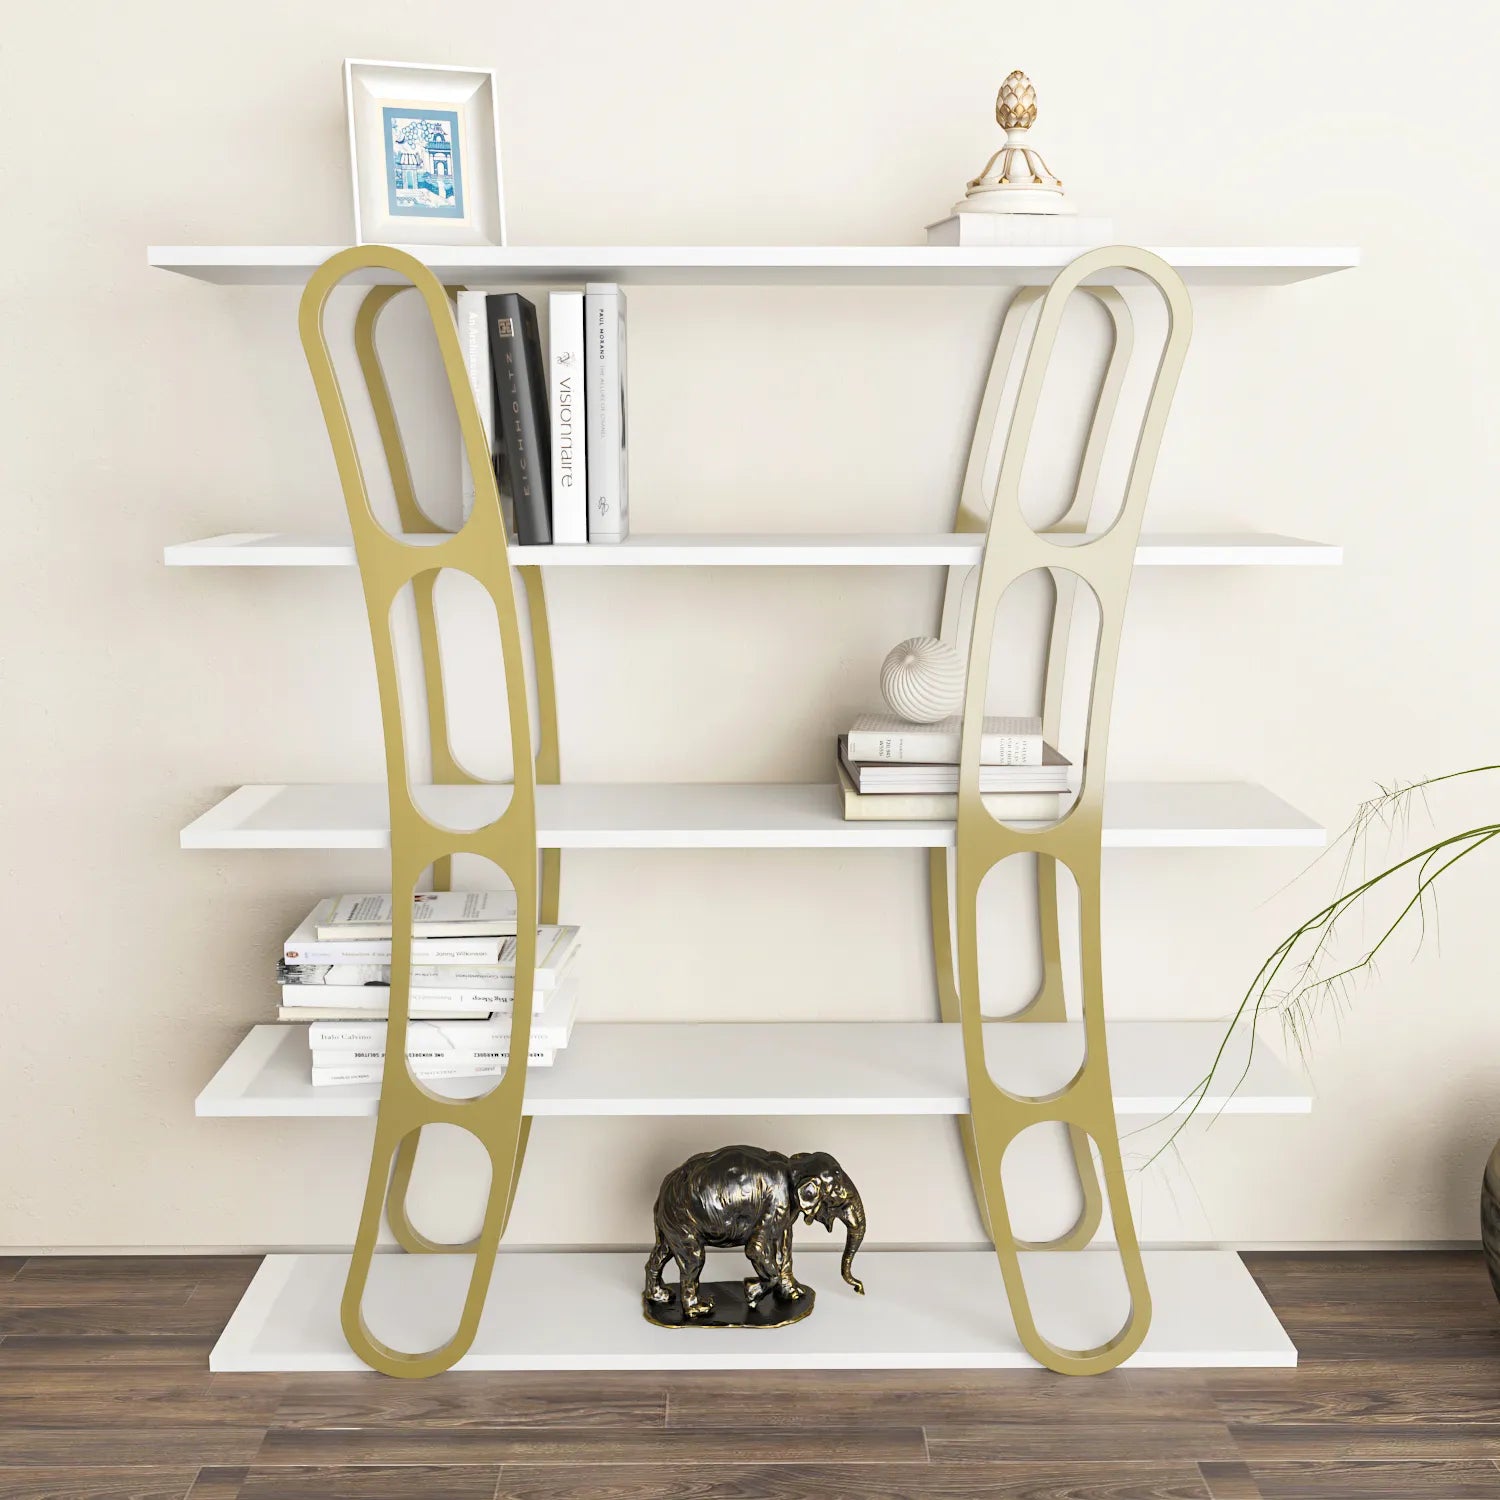 Adar 47" Tall Bookcase | Bookshelf | Display Unit